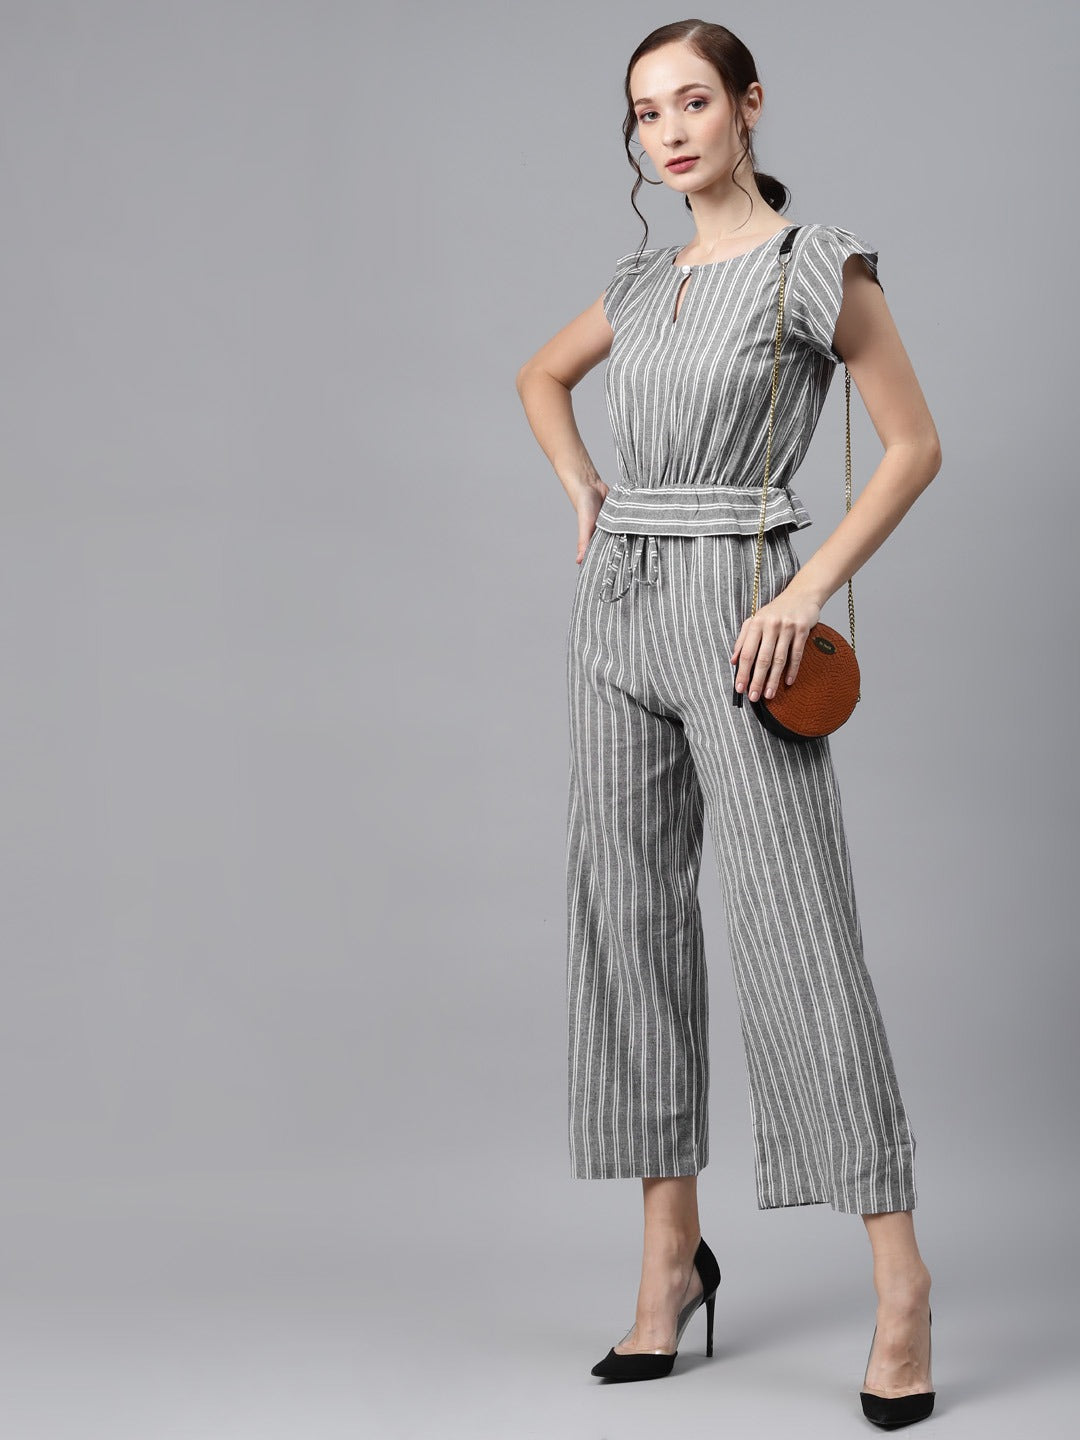 Cottinfab Charcoal Grey & White Striped Cotton Culotte Jumpsuit